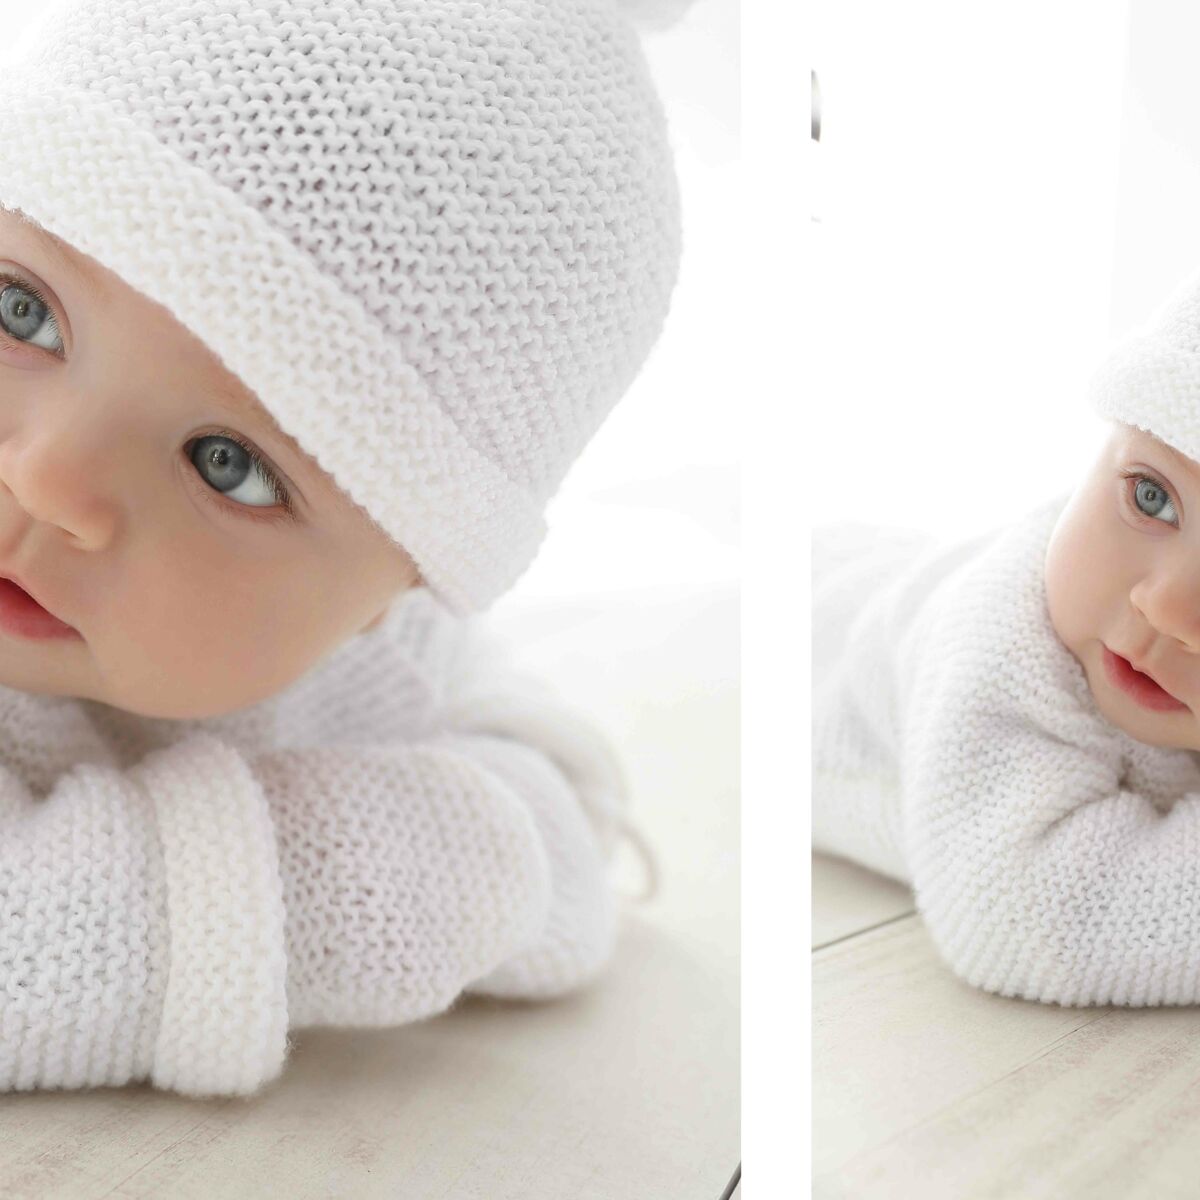 Gants tricotés pour bébé - Moufles en tricot - Pour enfants et